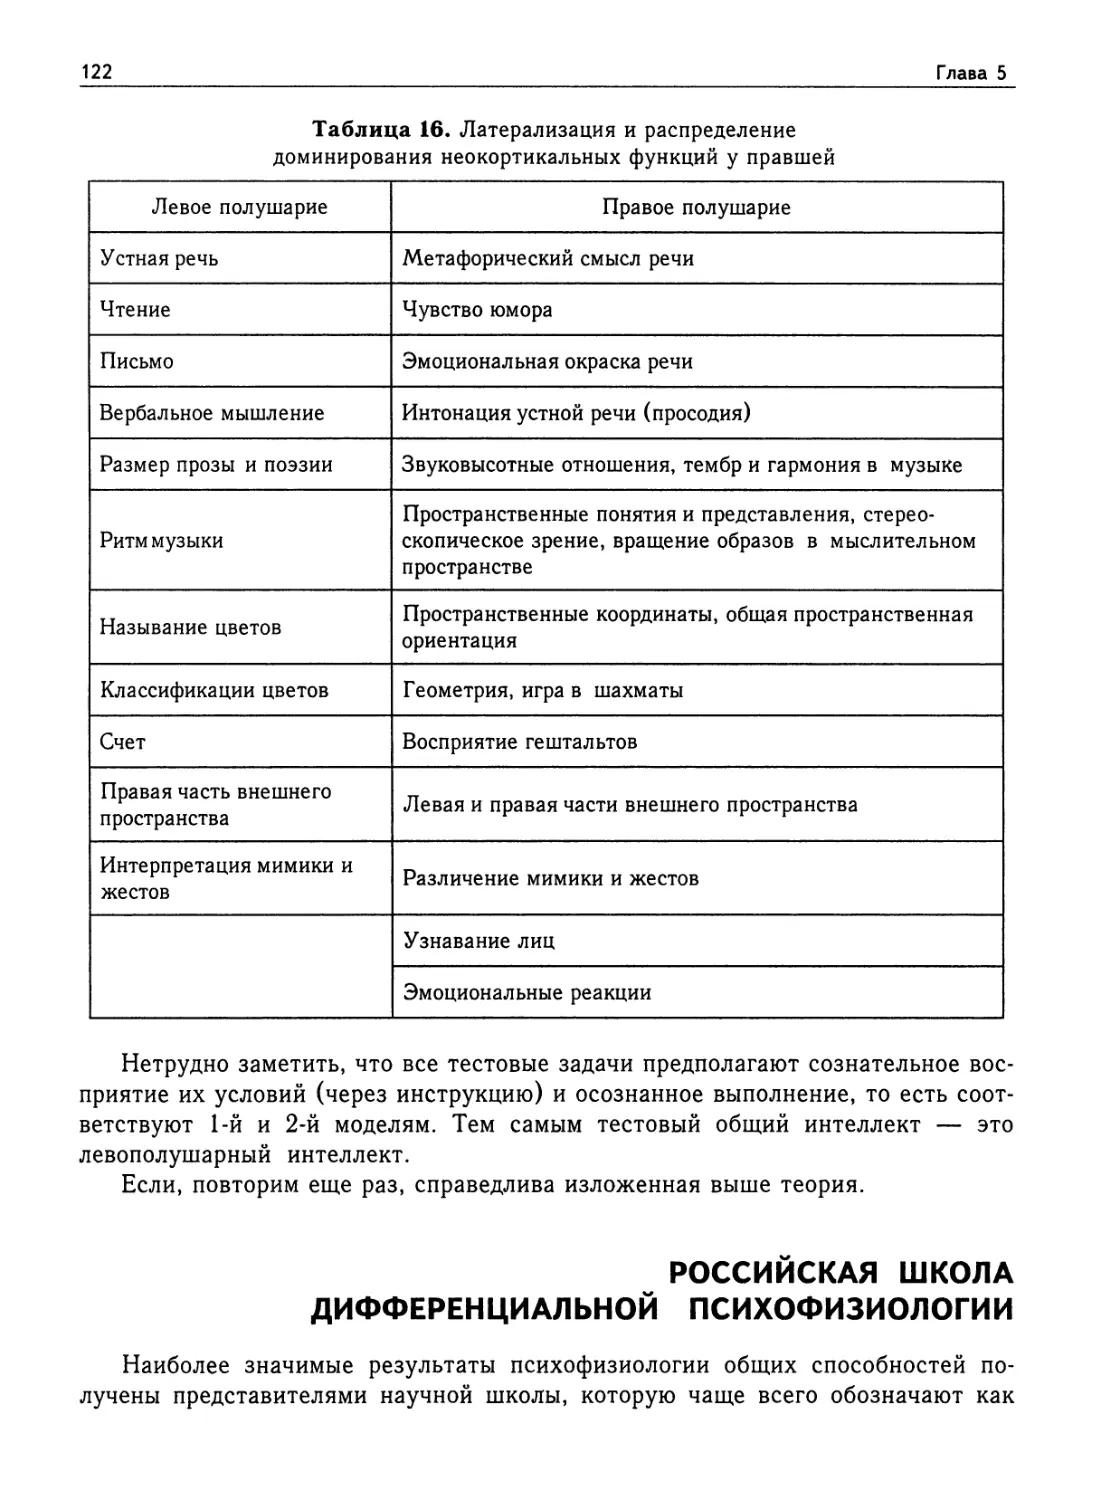 Российская школа дифференциальной психофизиологии